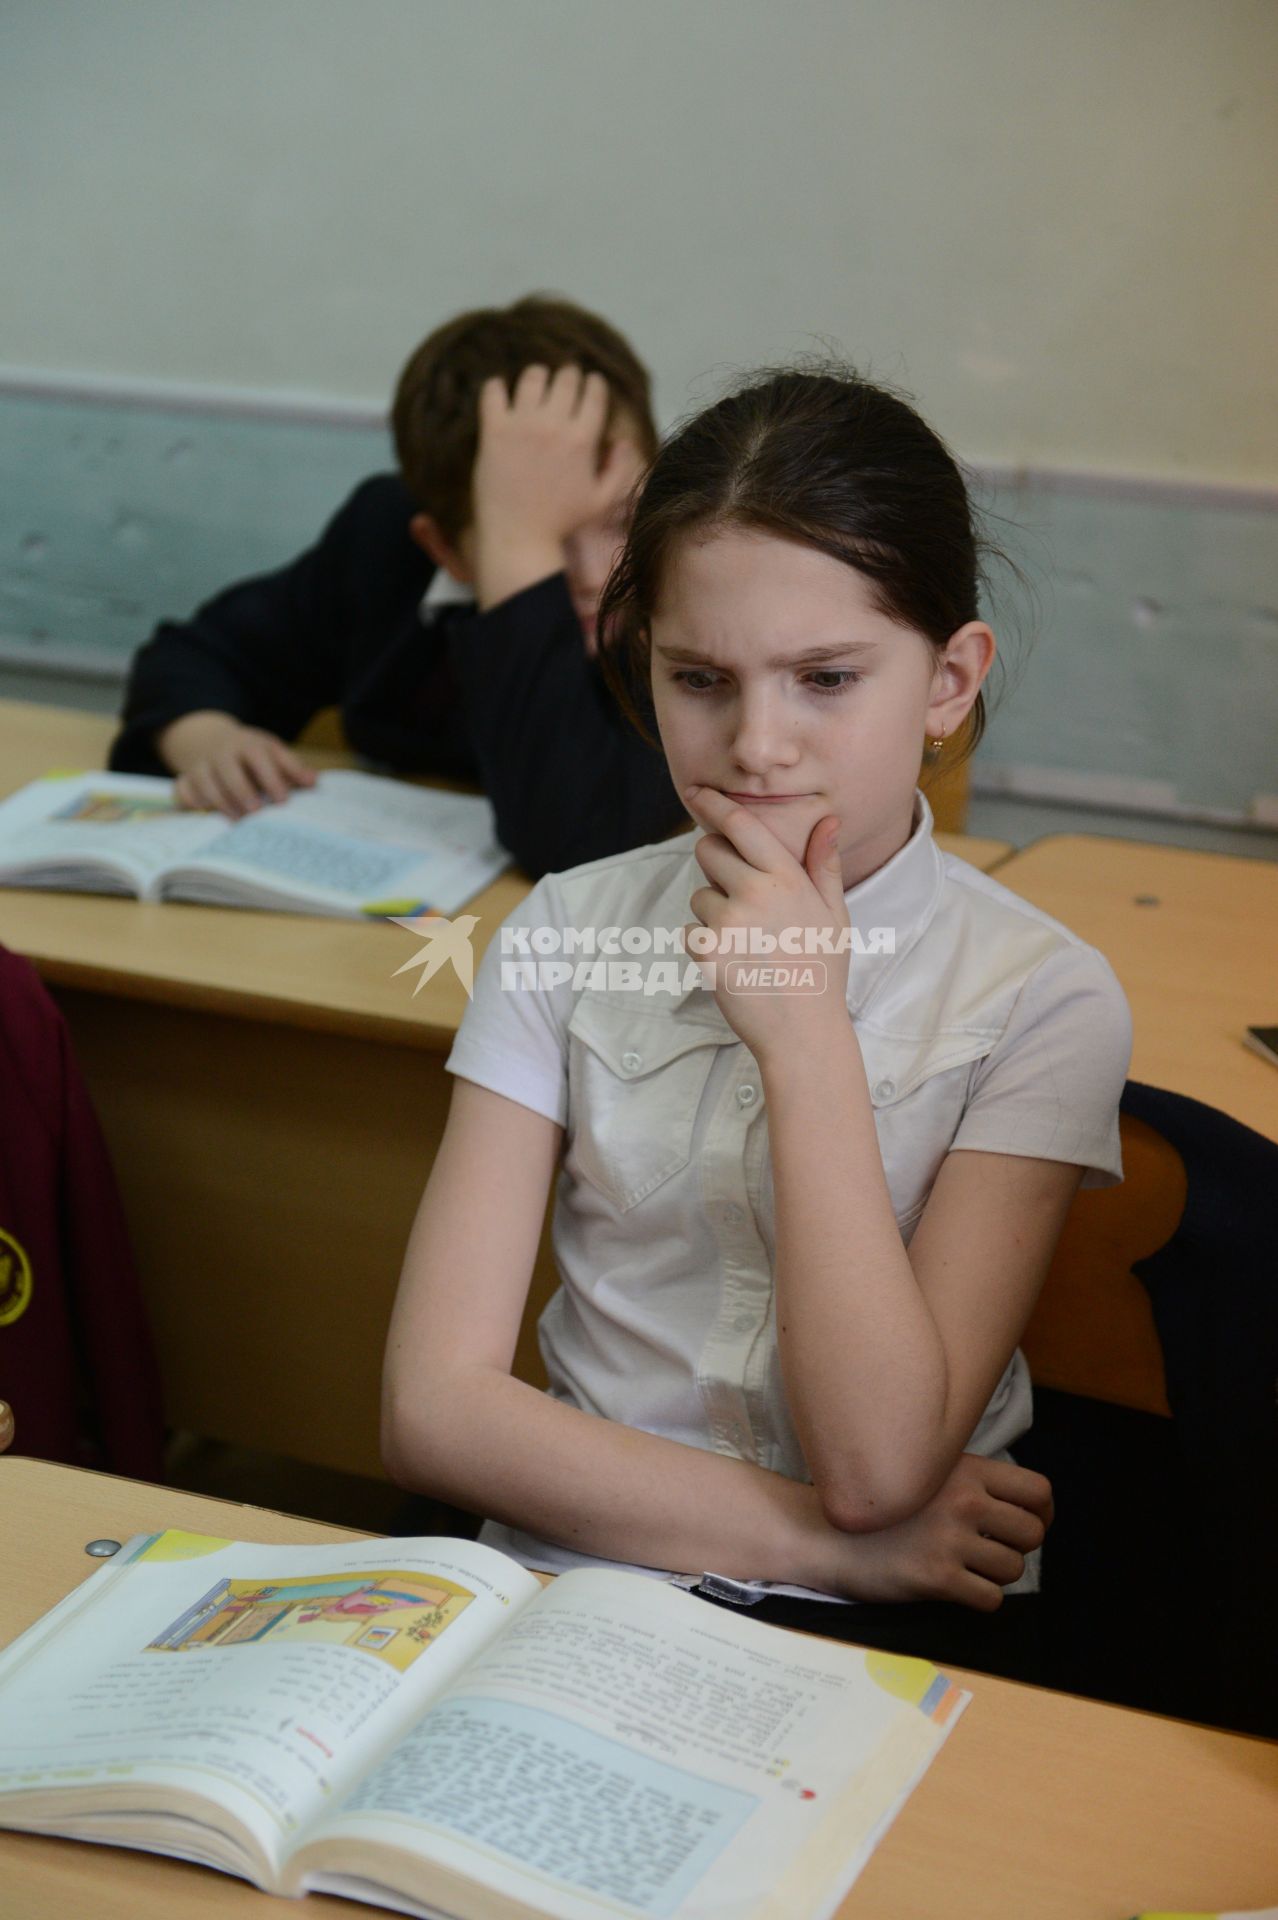 Оренбургскя гимназия. На снимке: учащиеся на уроке английского языка.